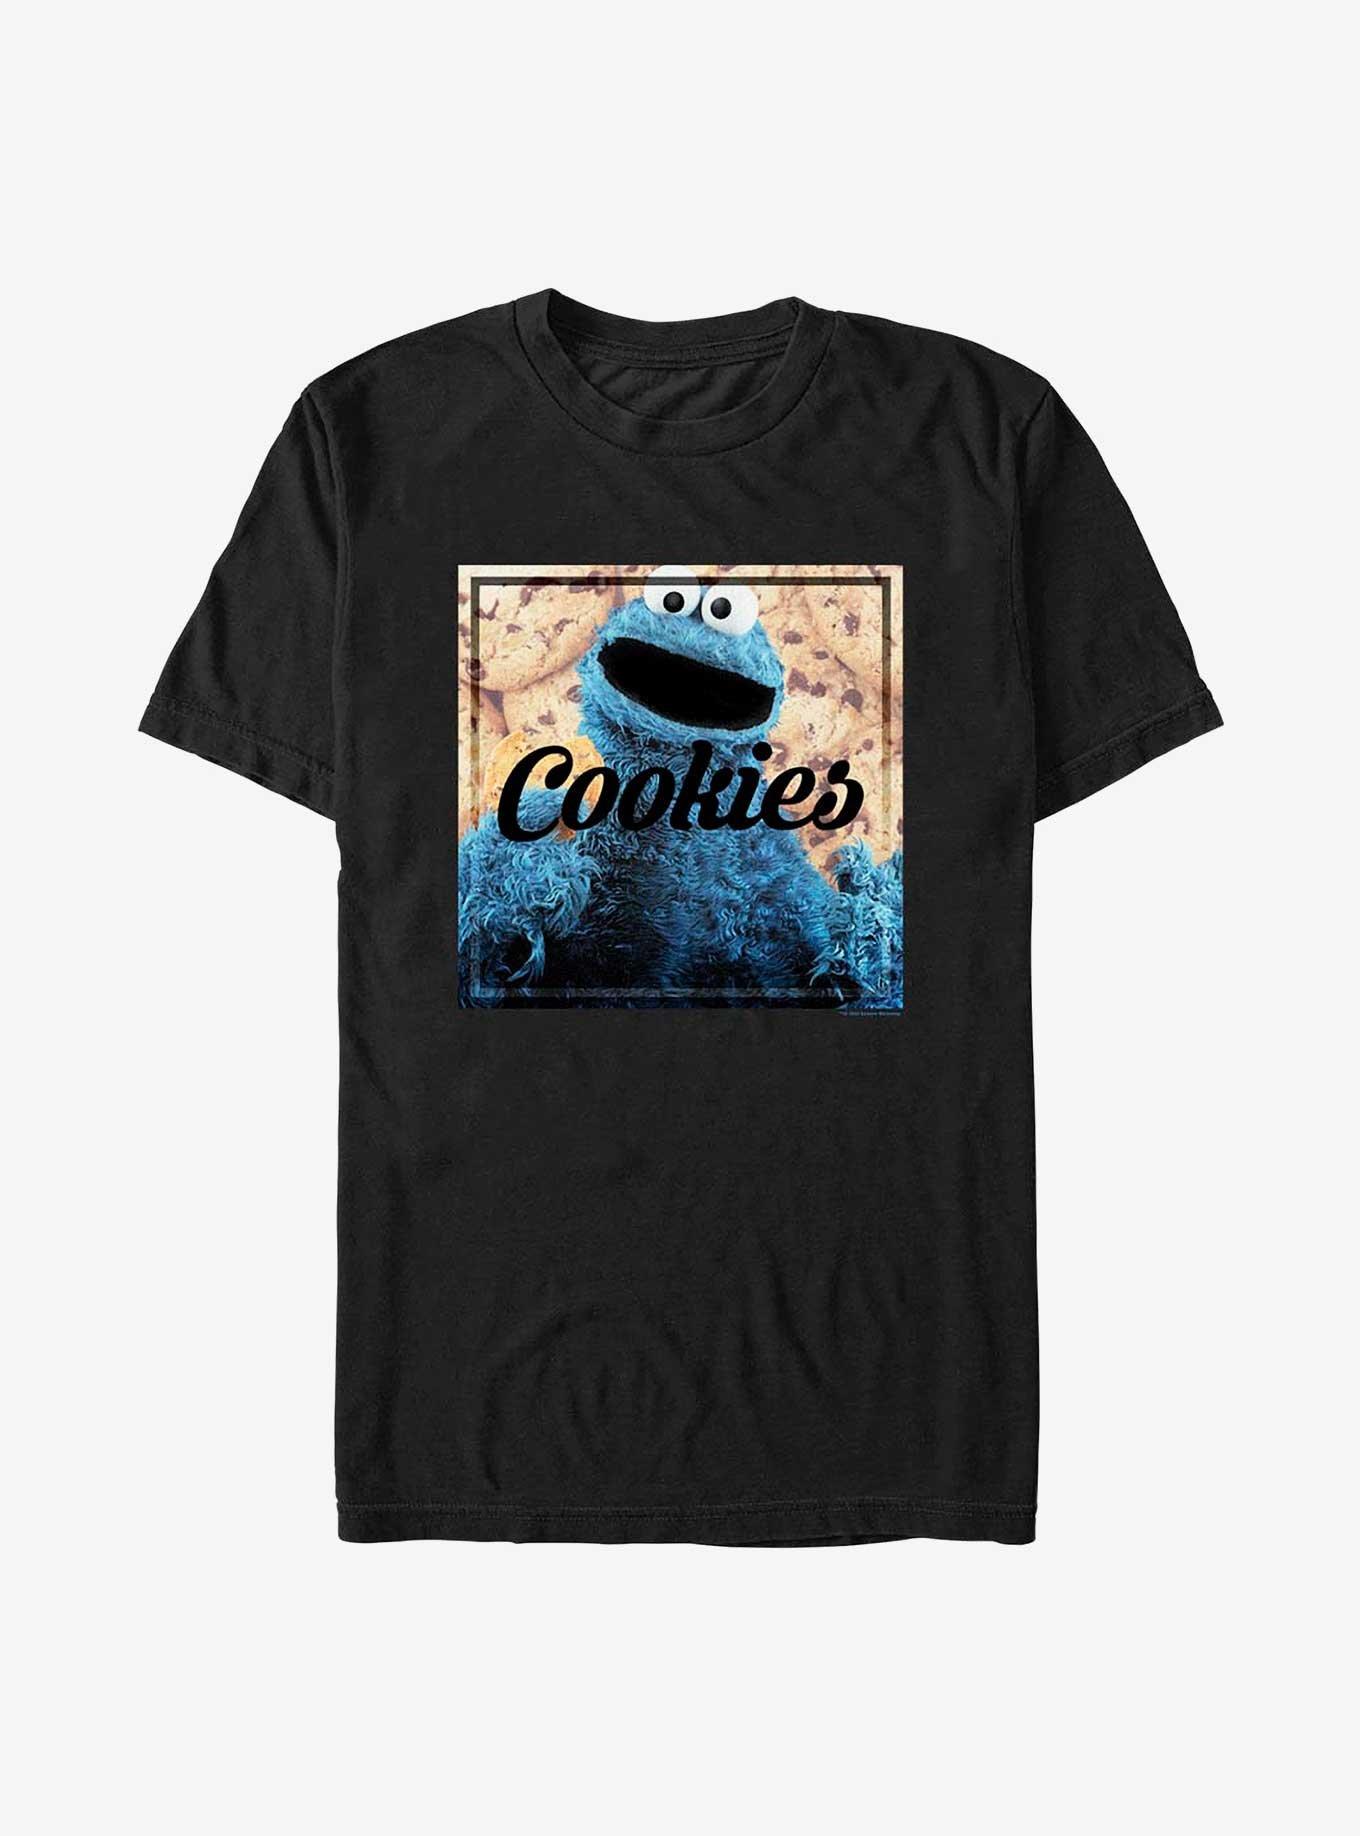 Sesame Street Cookies Cookie Monster T-Shirt, BLACK, hi-res